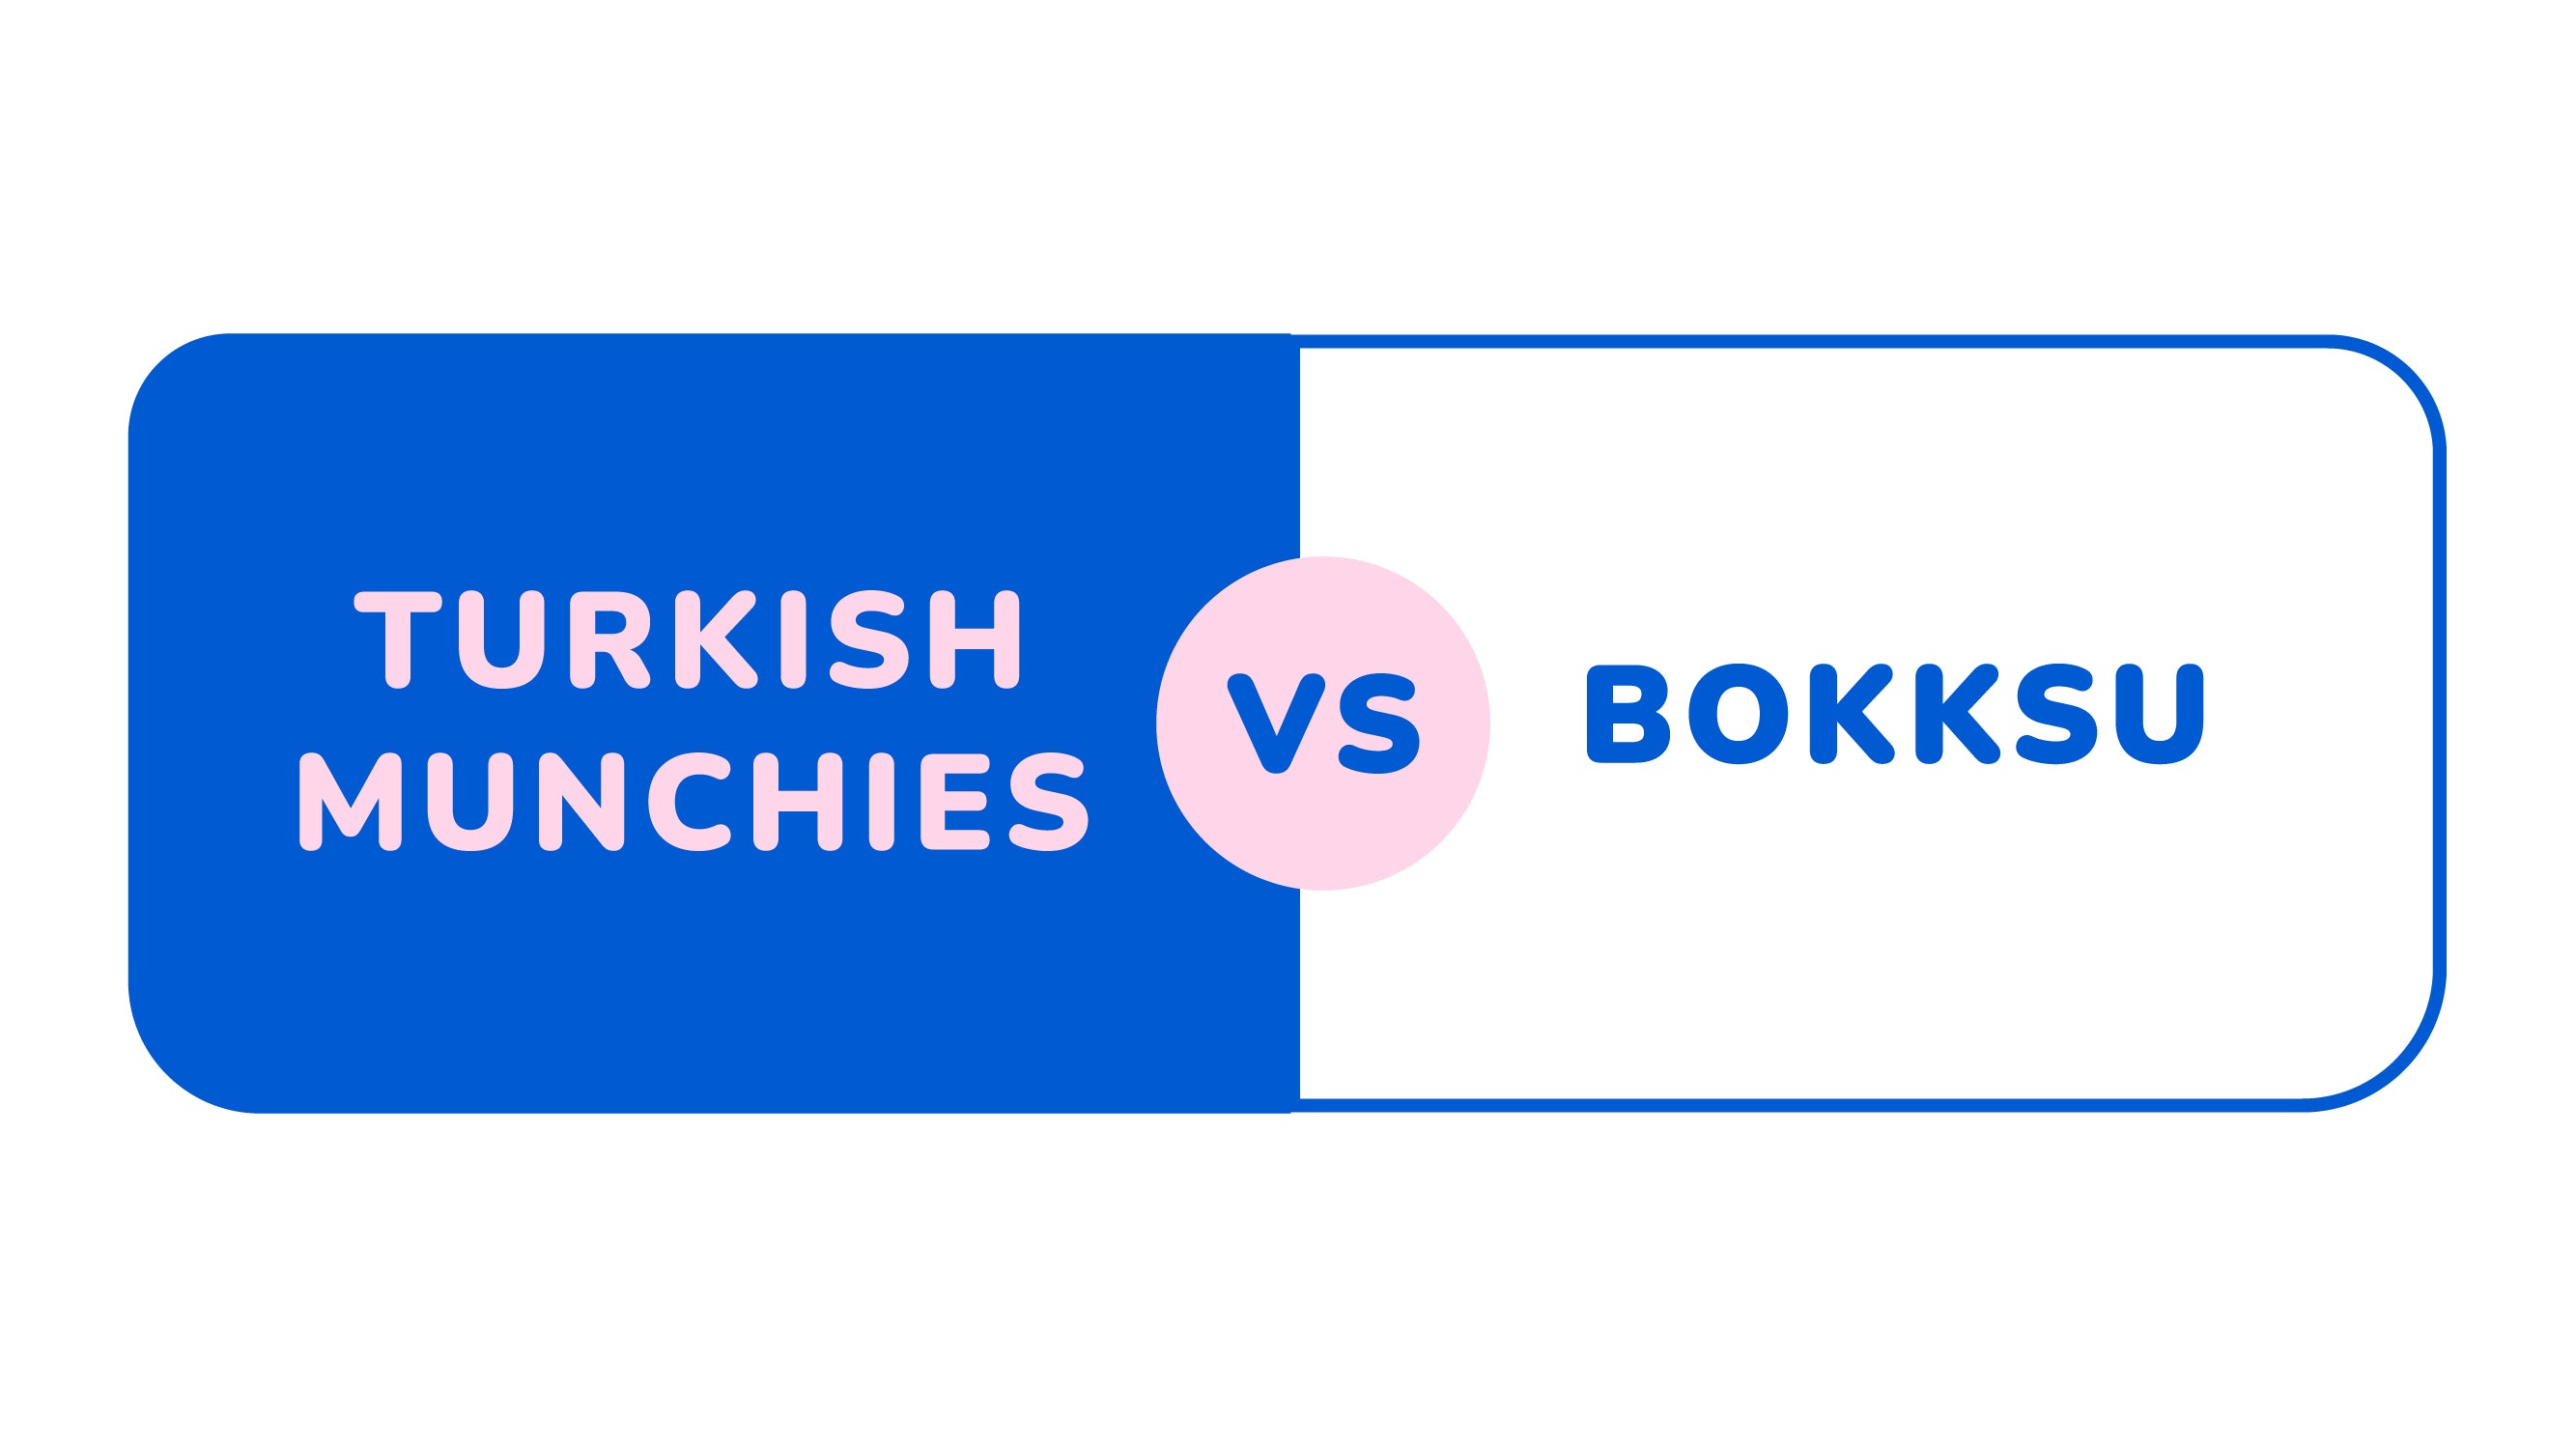 Turkish Munchies vs Bokksu